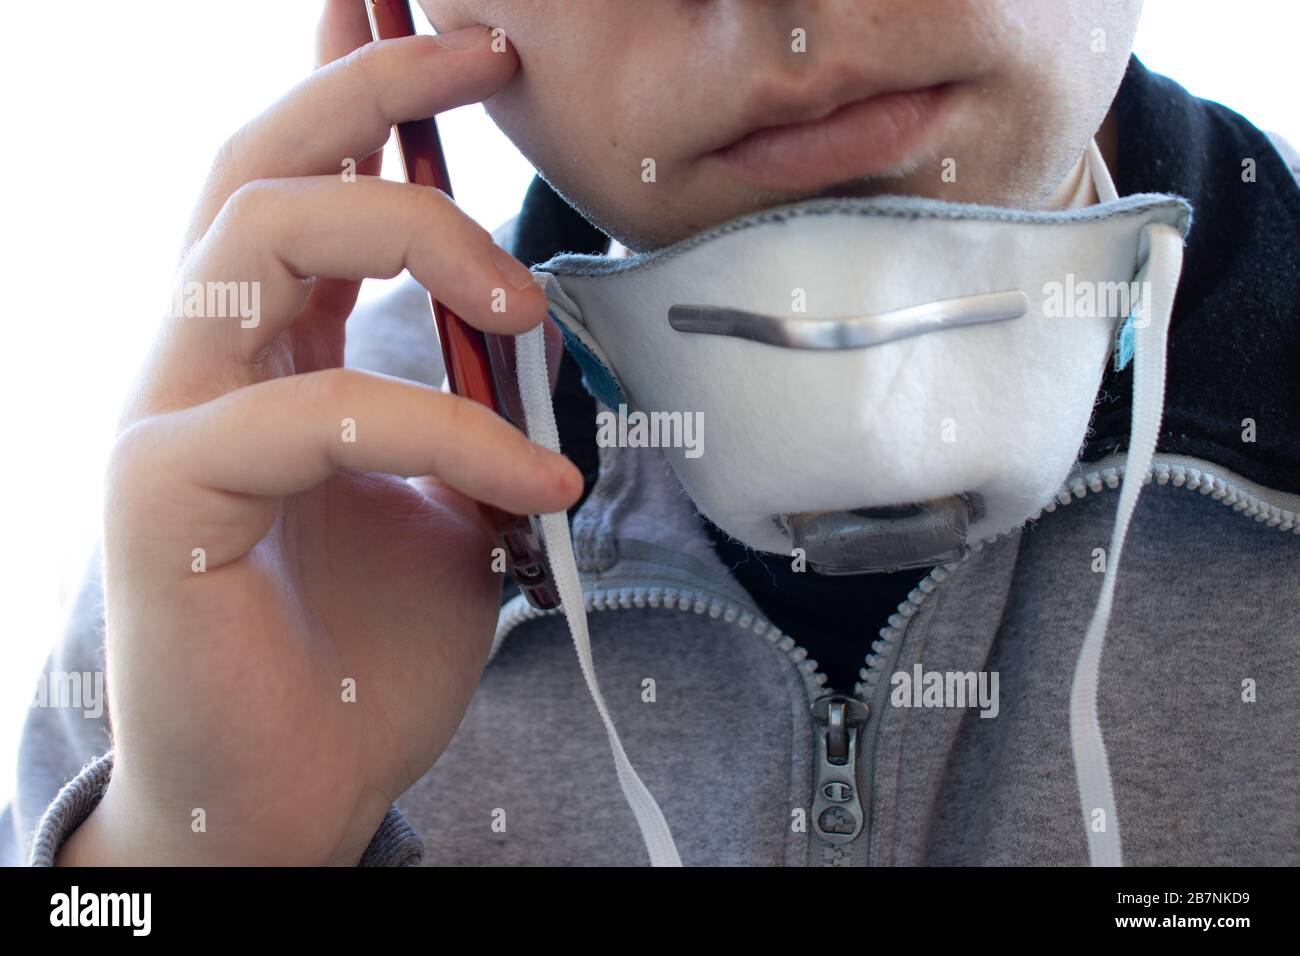 A man in a facial respiratory mask makes a phone call. Respirator on the neck. Man face close-up. Virus or disease alert concept Stock Photo